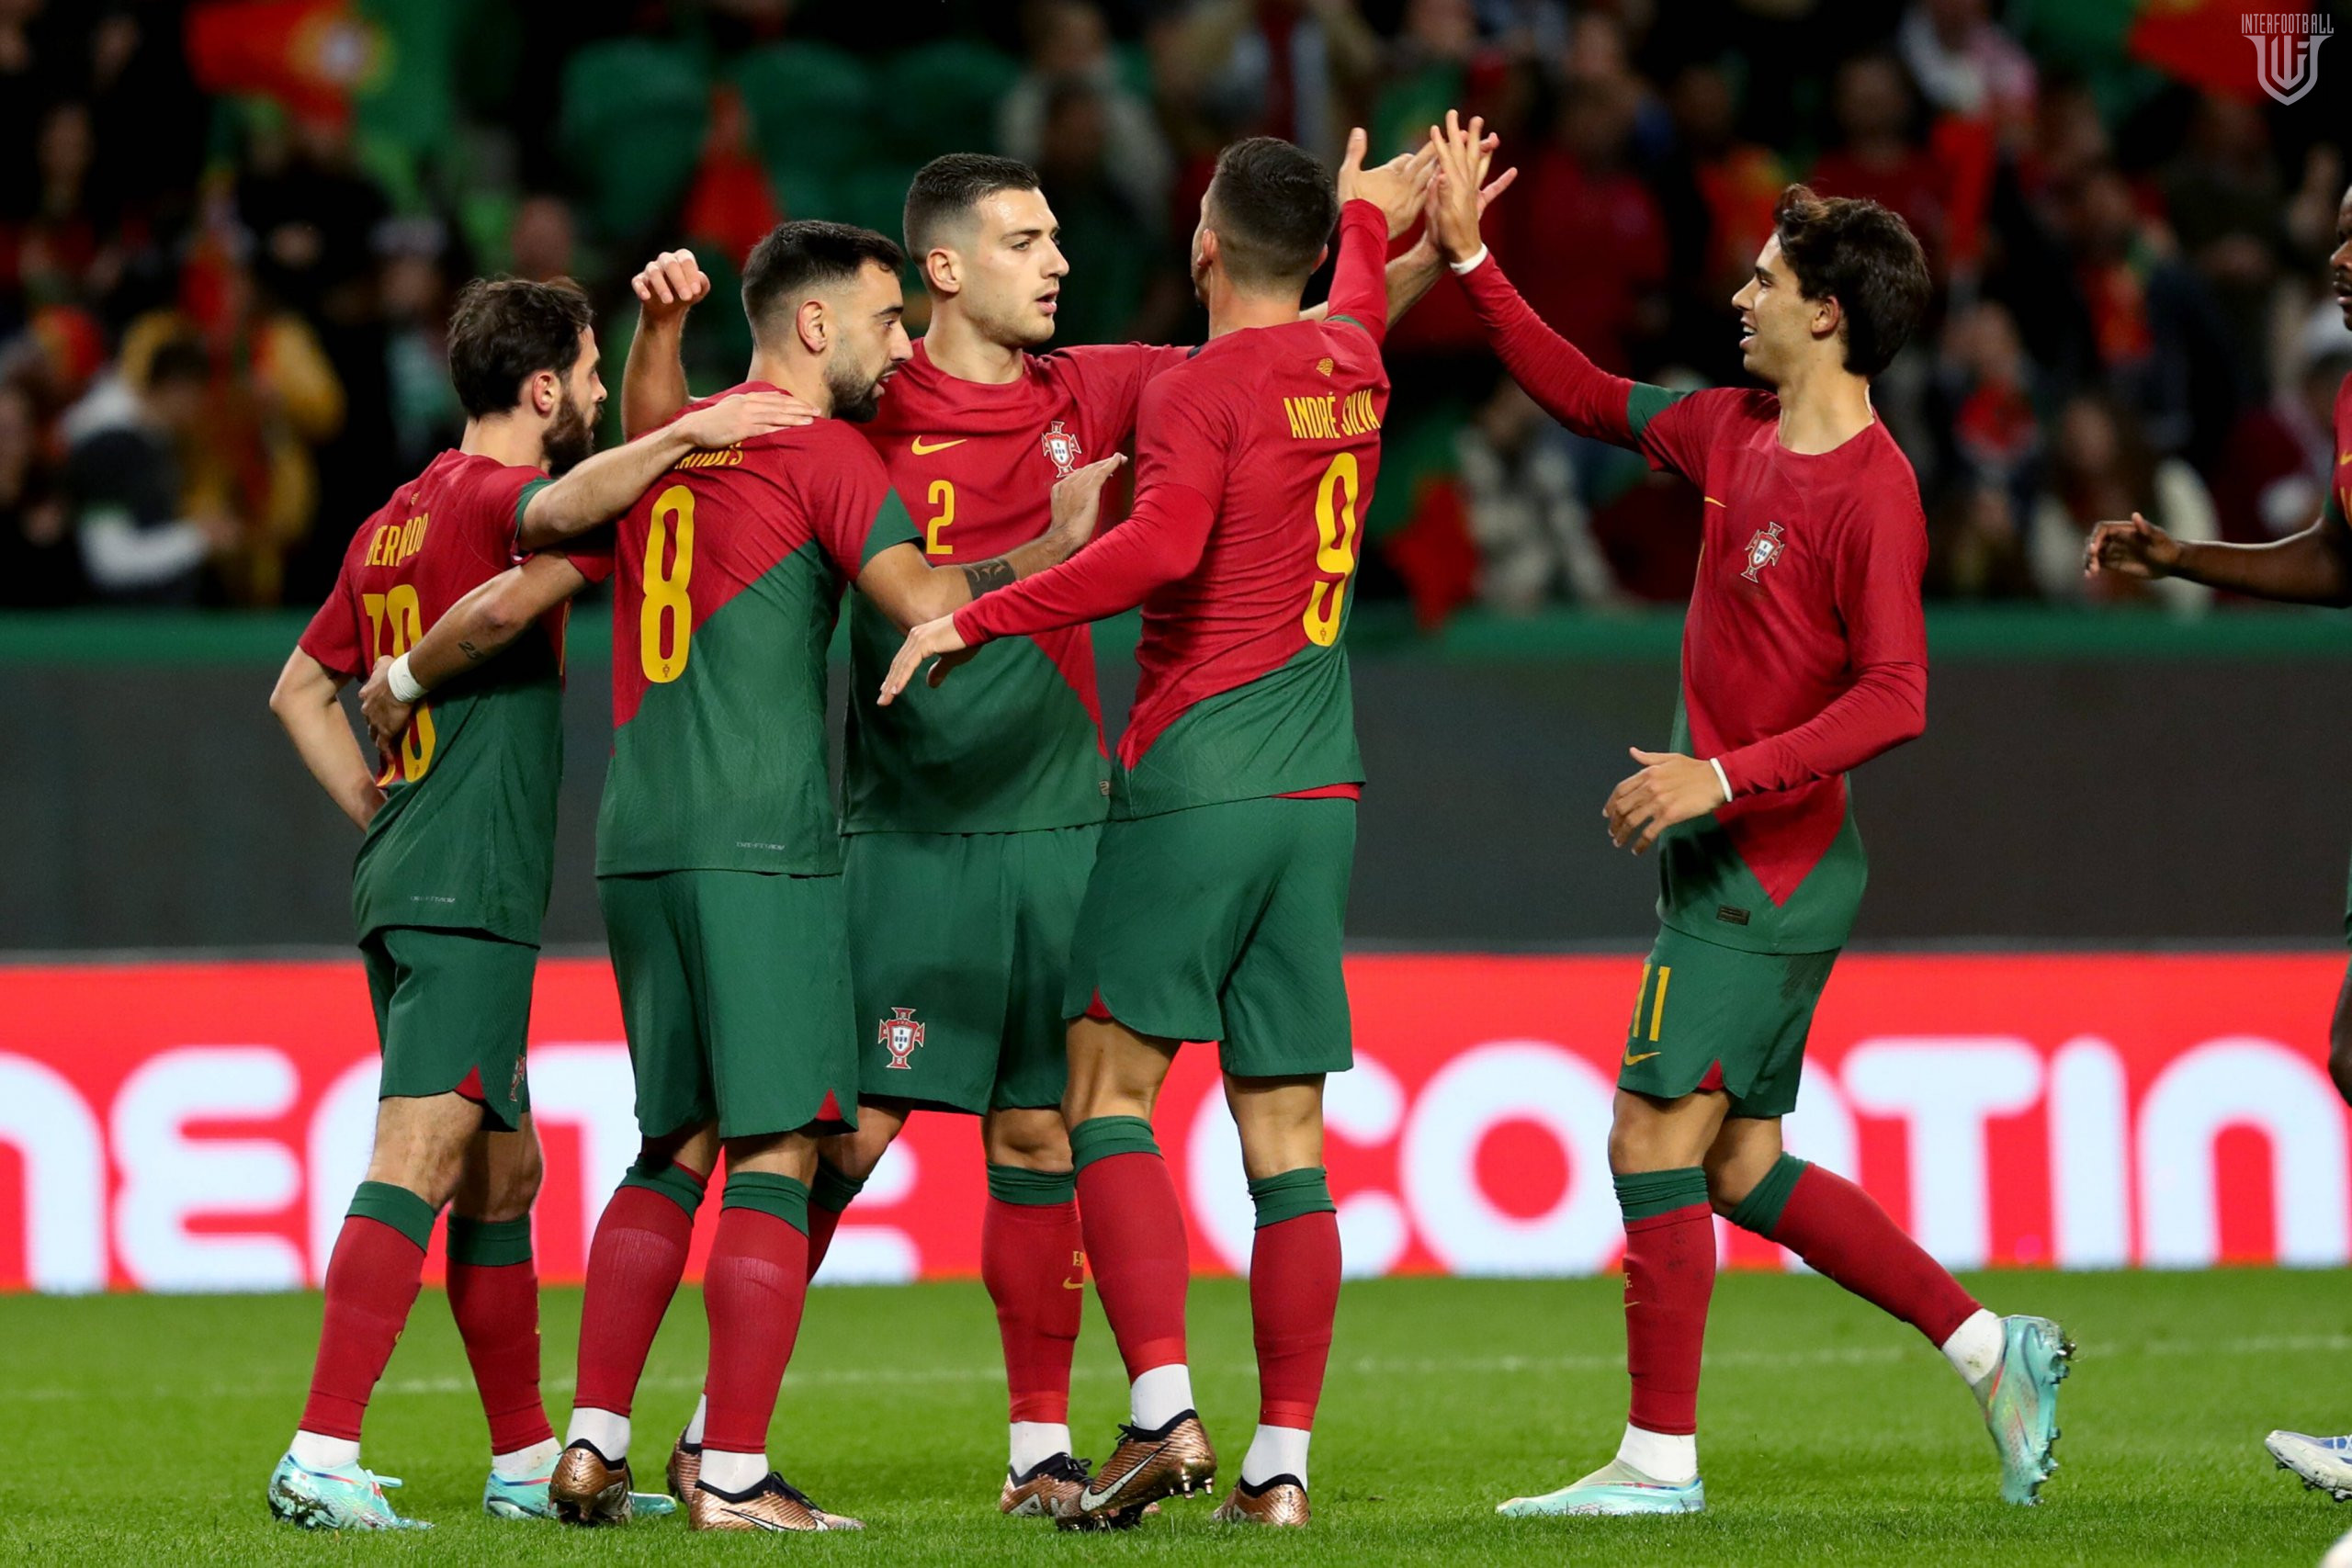 Ընկերական հանդիպումներ. Պորտուգալիան հիանալի խաղով ջախջախեց Նիգերիային🎥